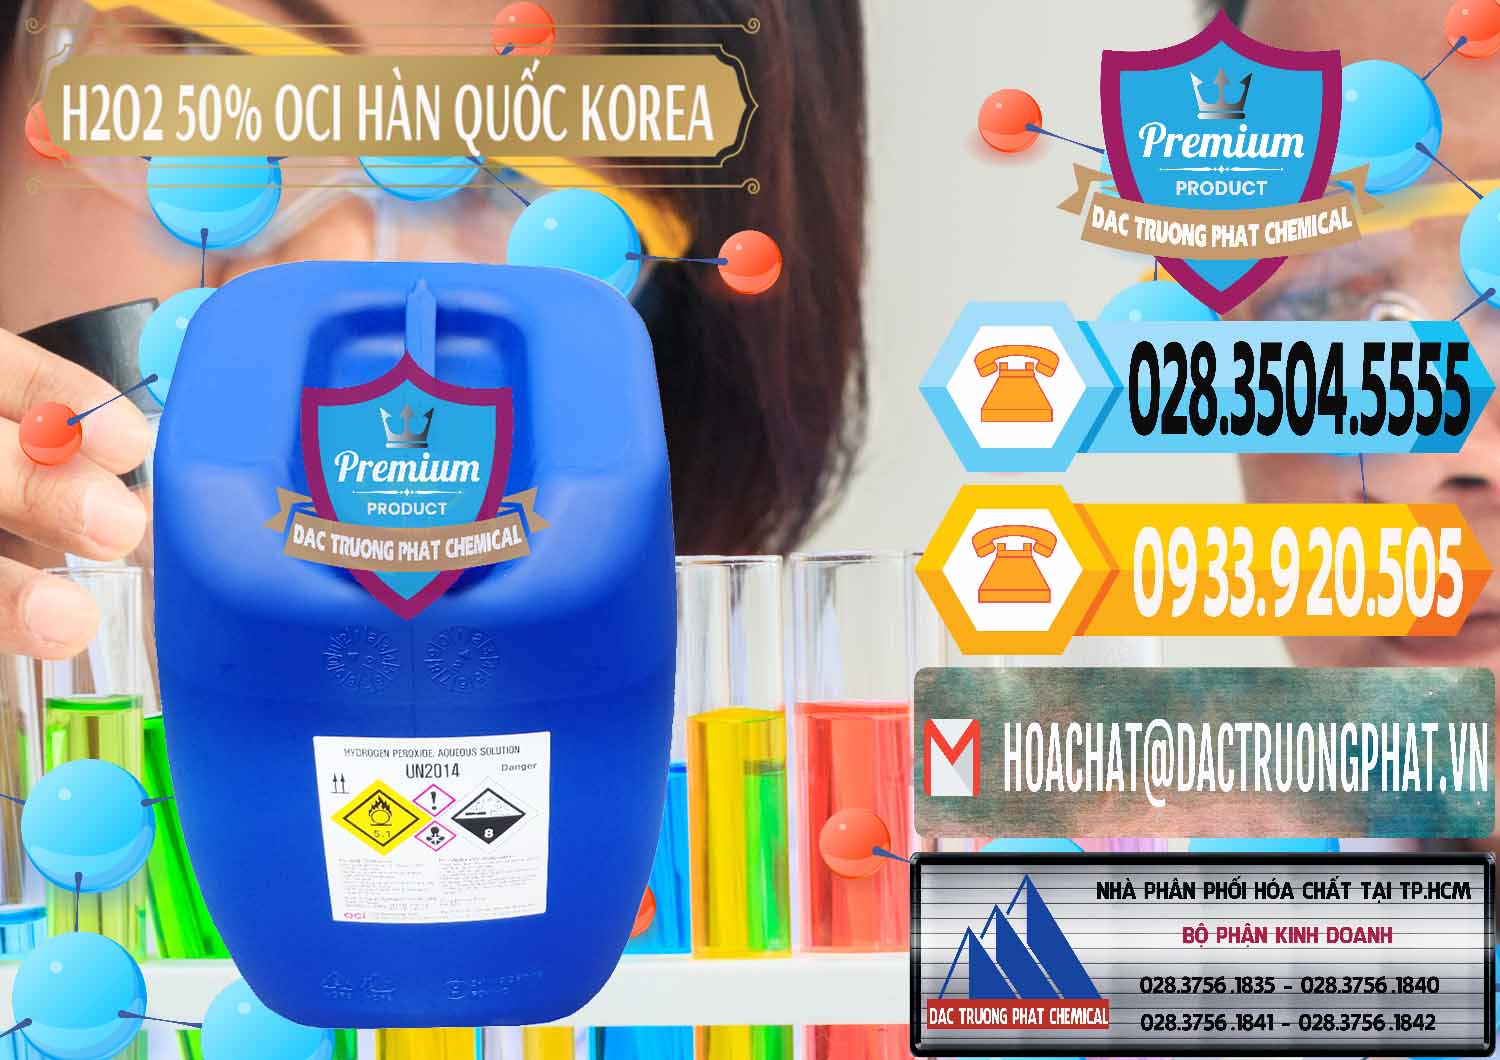 Công ty chuyên bán ( phân phối ) H2O2 - Hydrogen Peroxide 50% OCI Hàn Quốc Korea - 0075 - Công ty kinh doanh & cung cấp hóa chất tại TP.HCM - hoachattayrua.net